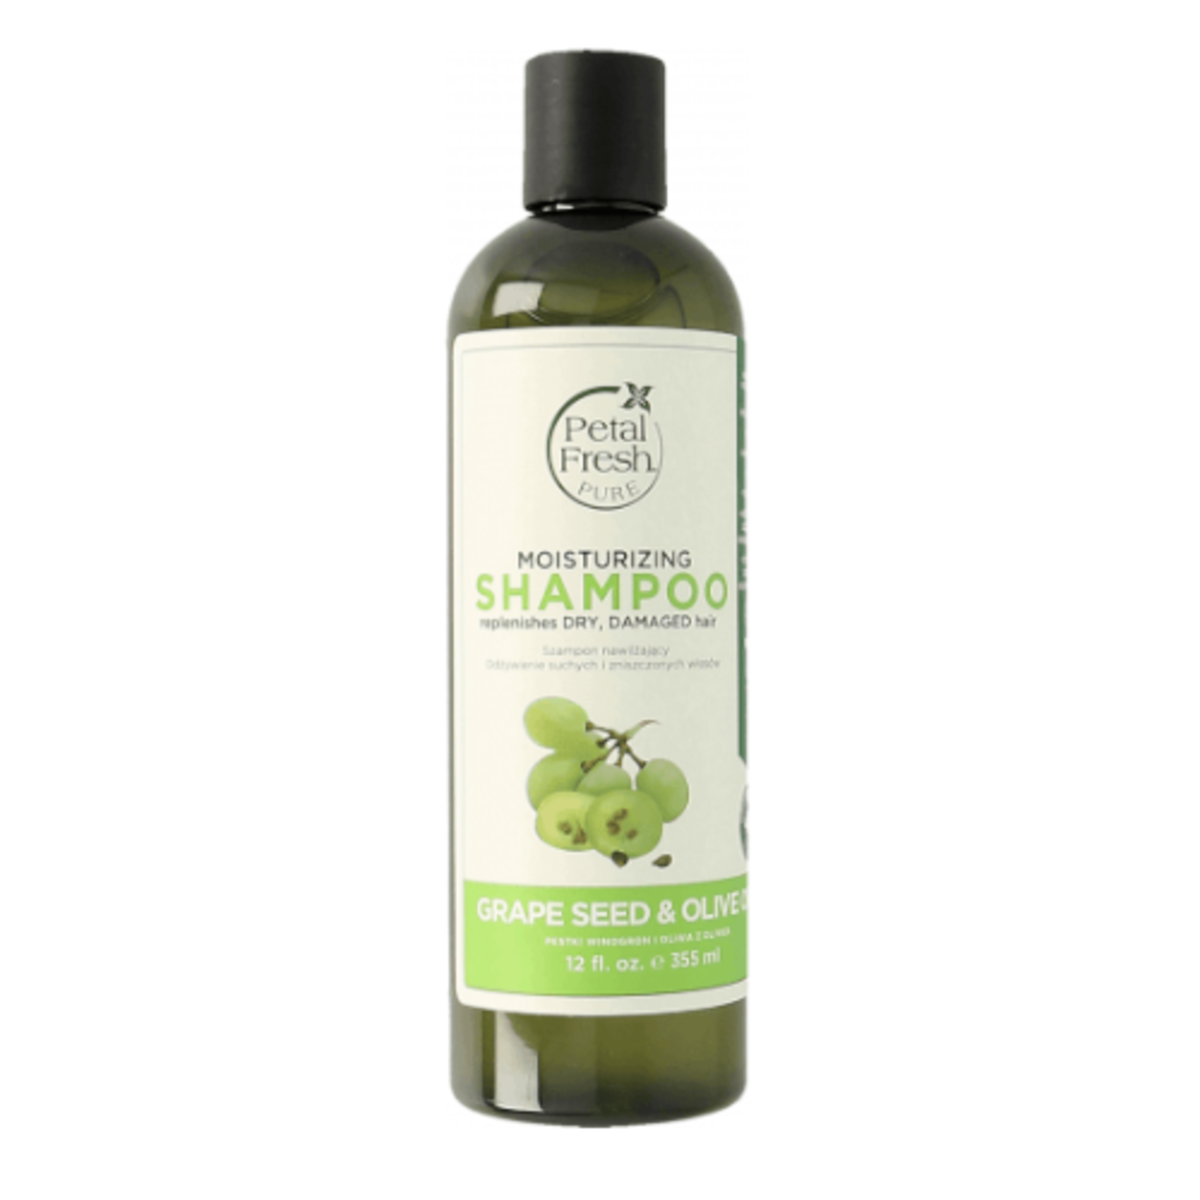 nawilzajacy szampon herbal bez sls